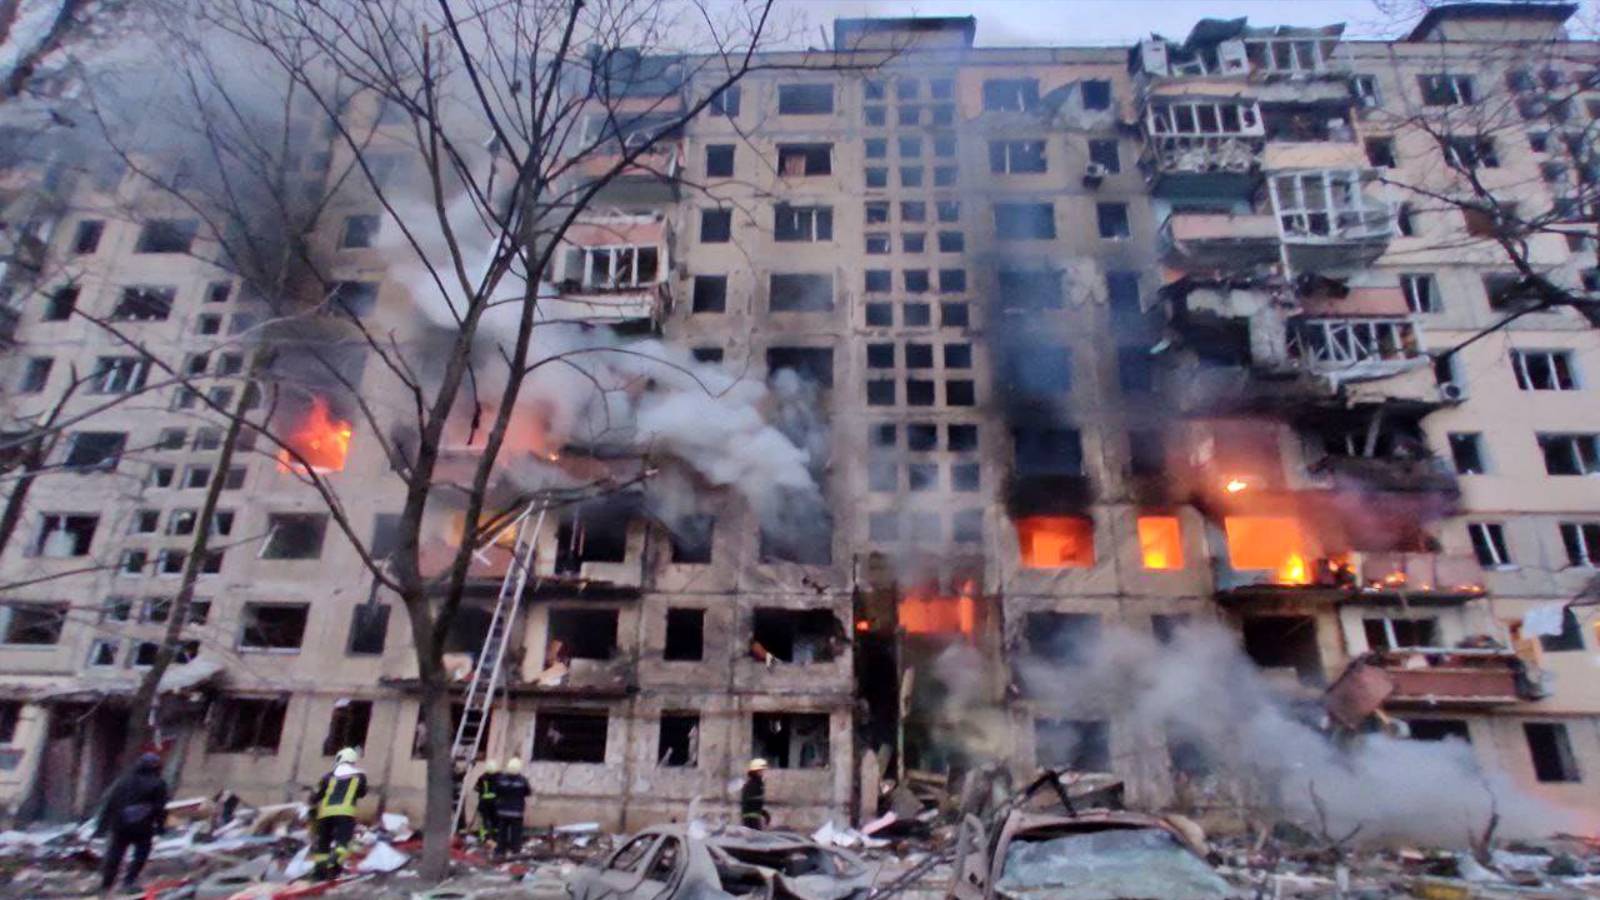 VIDEO Dramatische Bilder Zerstörung von Wohngebieten durch Bombenanschläge in der Ukraine